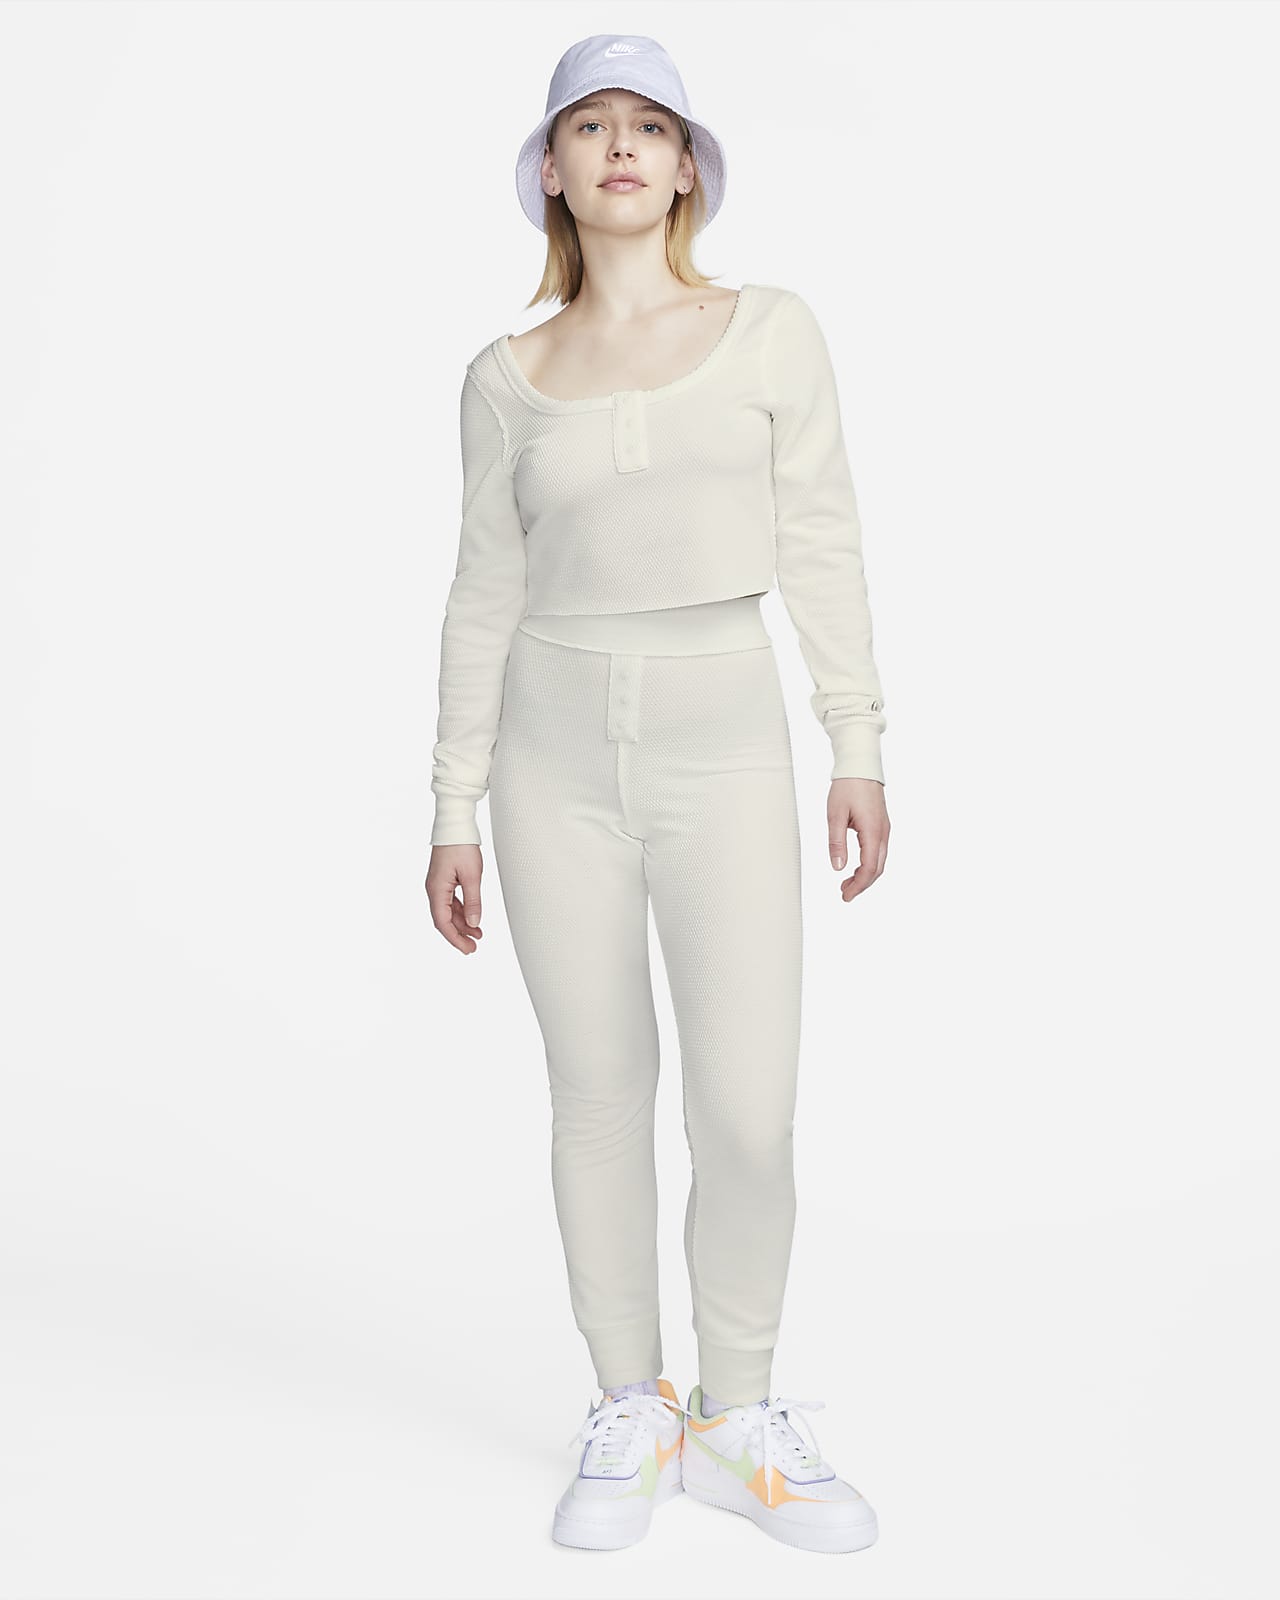 Nike Sportswear Top. Women\'s Modern Crop Long-Sleeve Everyday